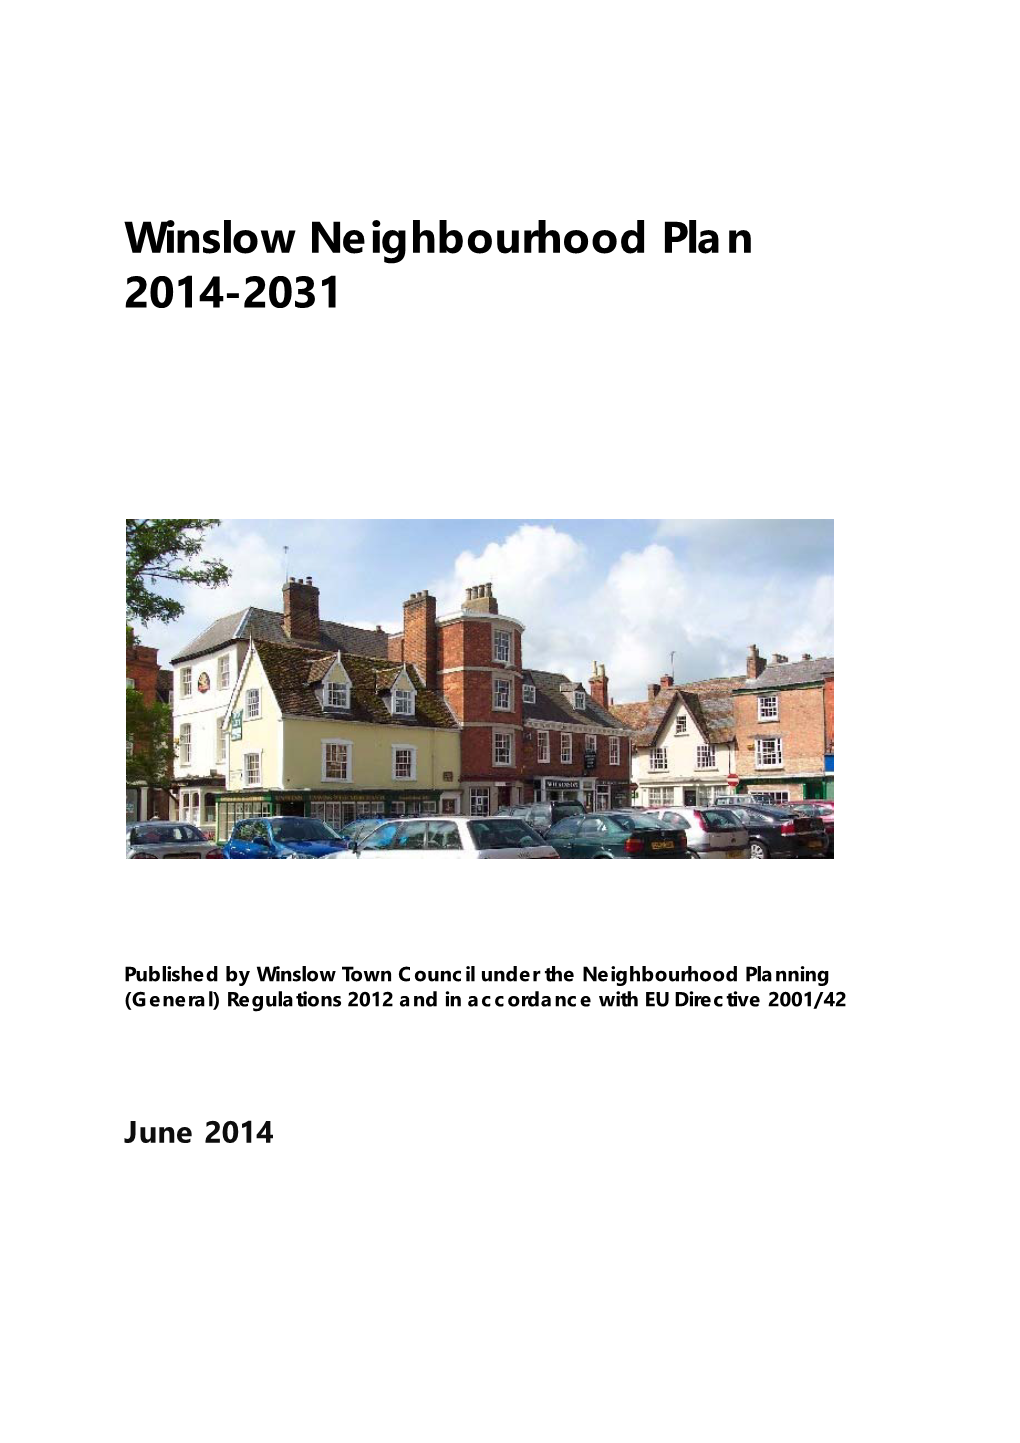 Winslow Neighbourhood Plan 2014-2031